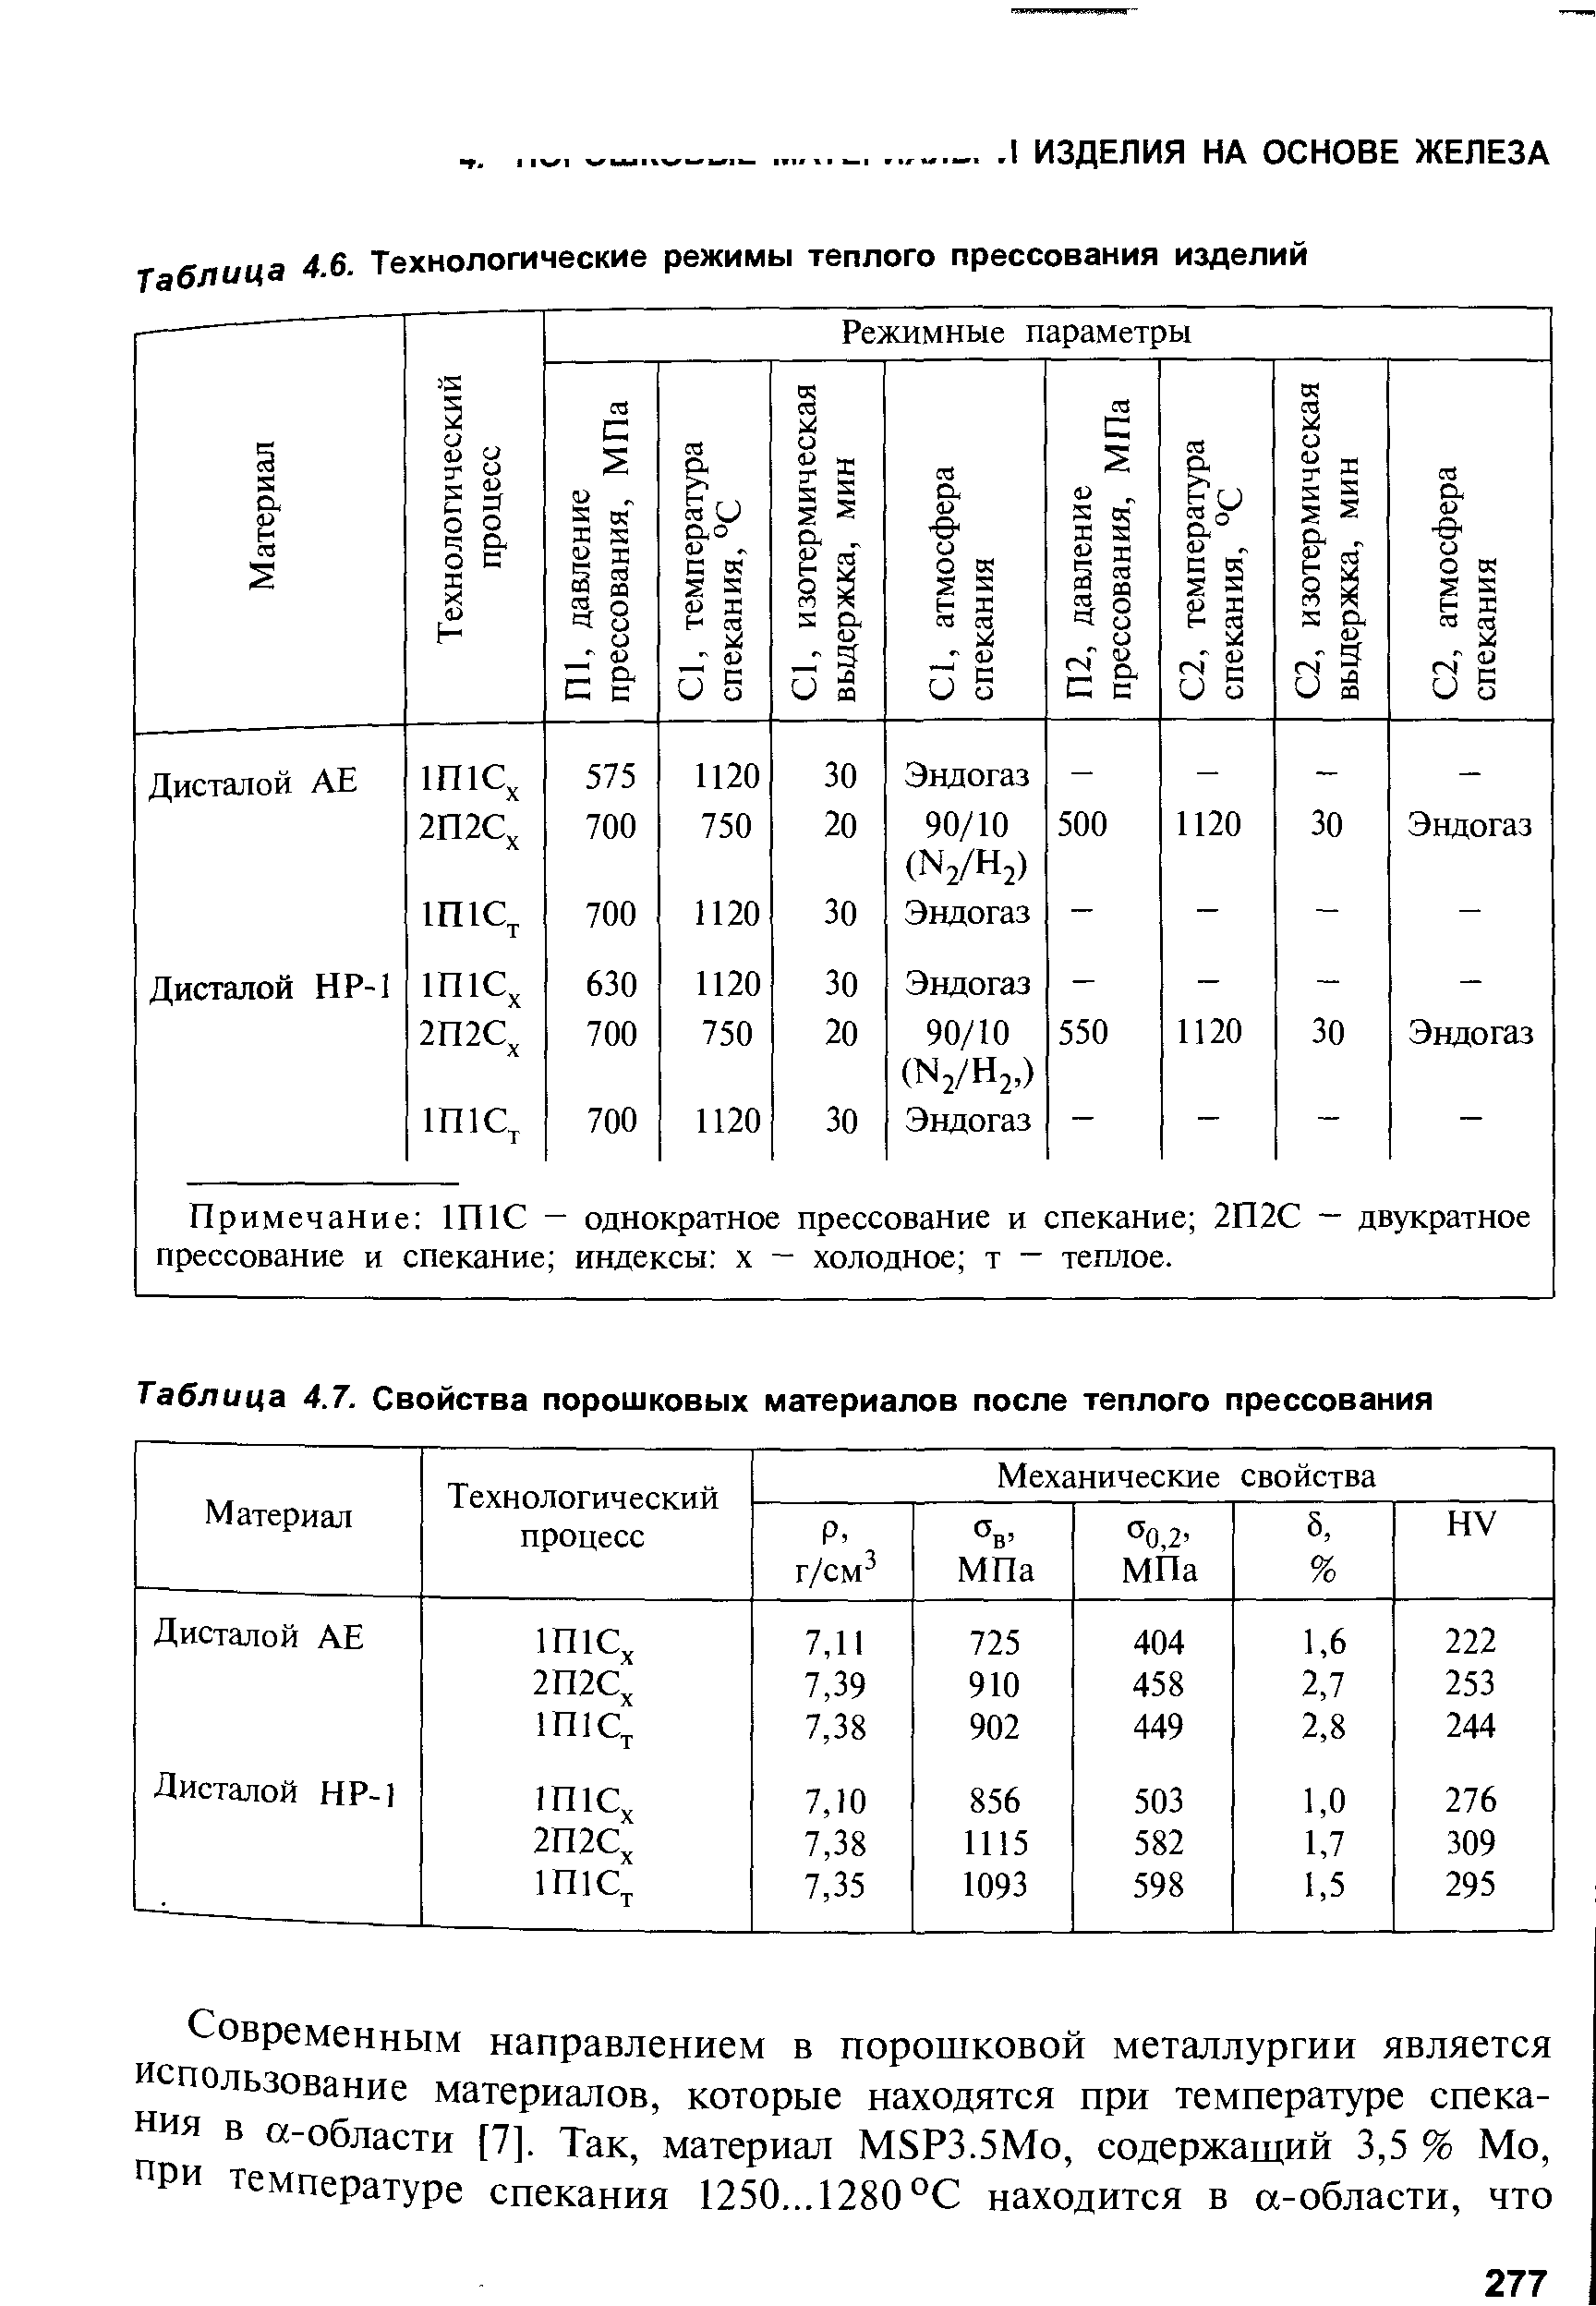 Таблица 4.7. Свойства порошковых материалов после теплого прессования
